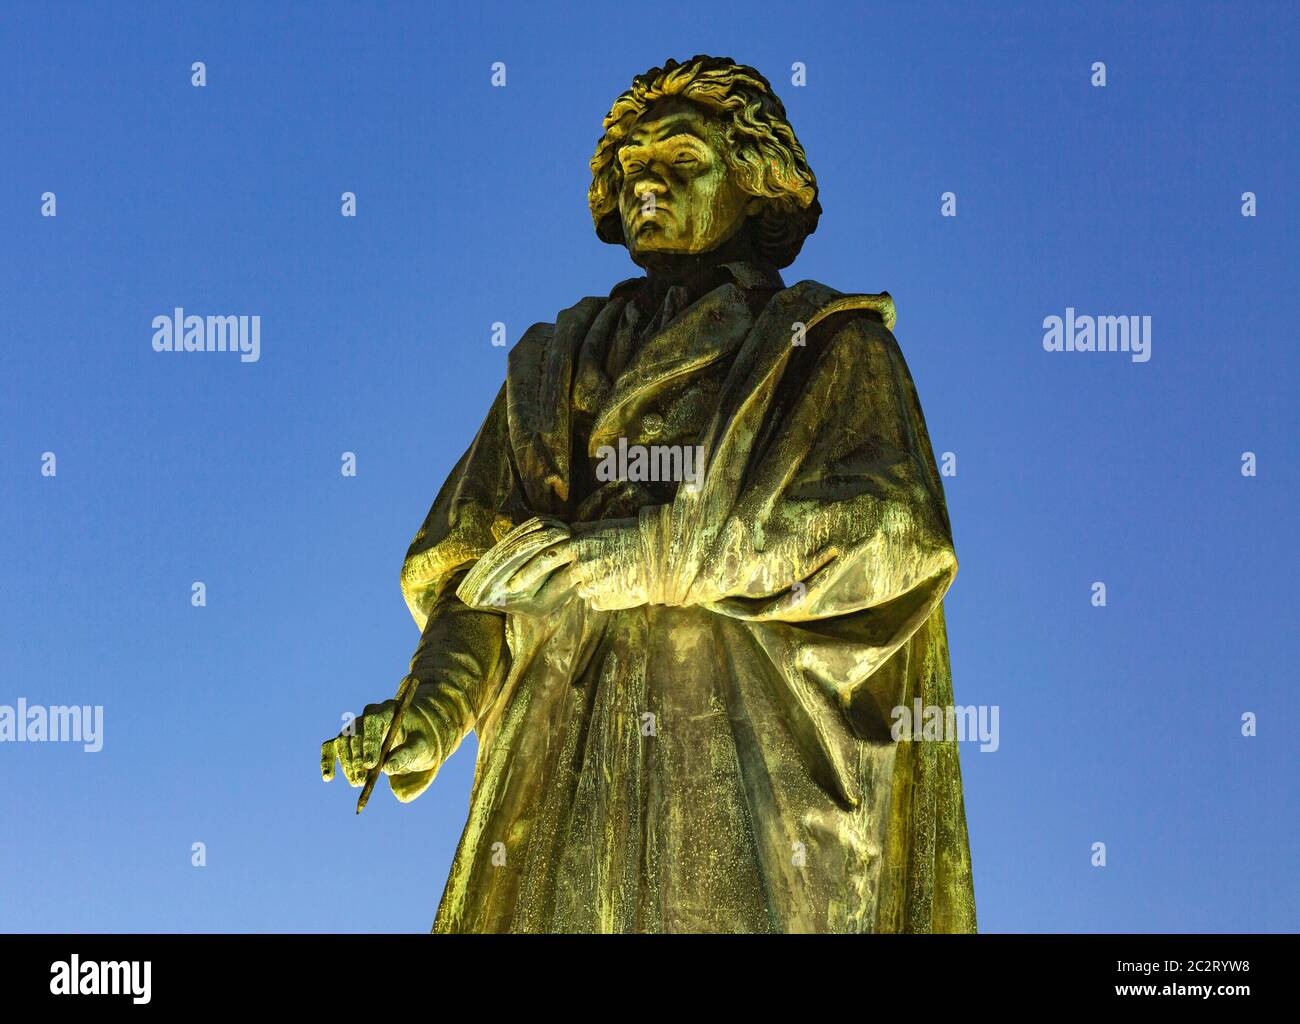 Komponist und Pianist Ludwig van Beethoven, Beethoven-Denkmal am Münsterplatz in Bonn am Rhein, Nordrhein-Westfalen, Abendstimmung, Nachtaufnahme, Be Stockfoto